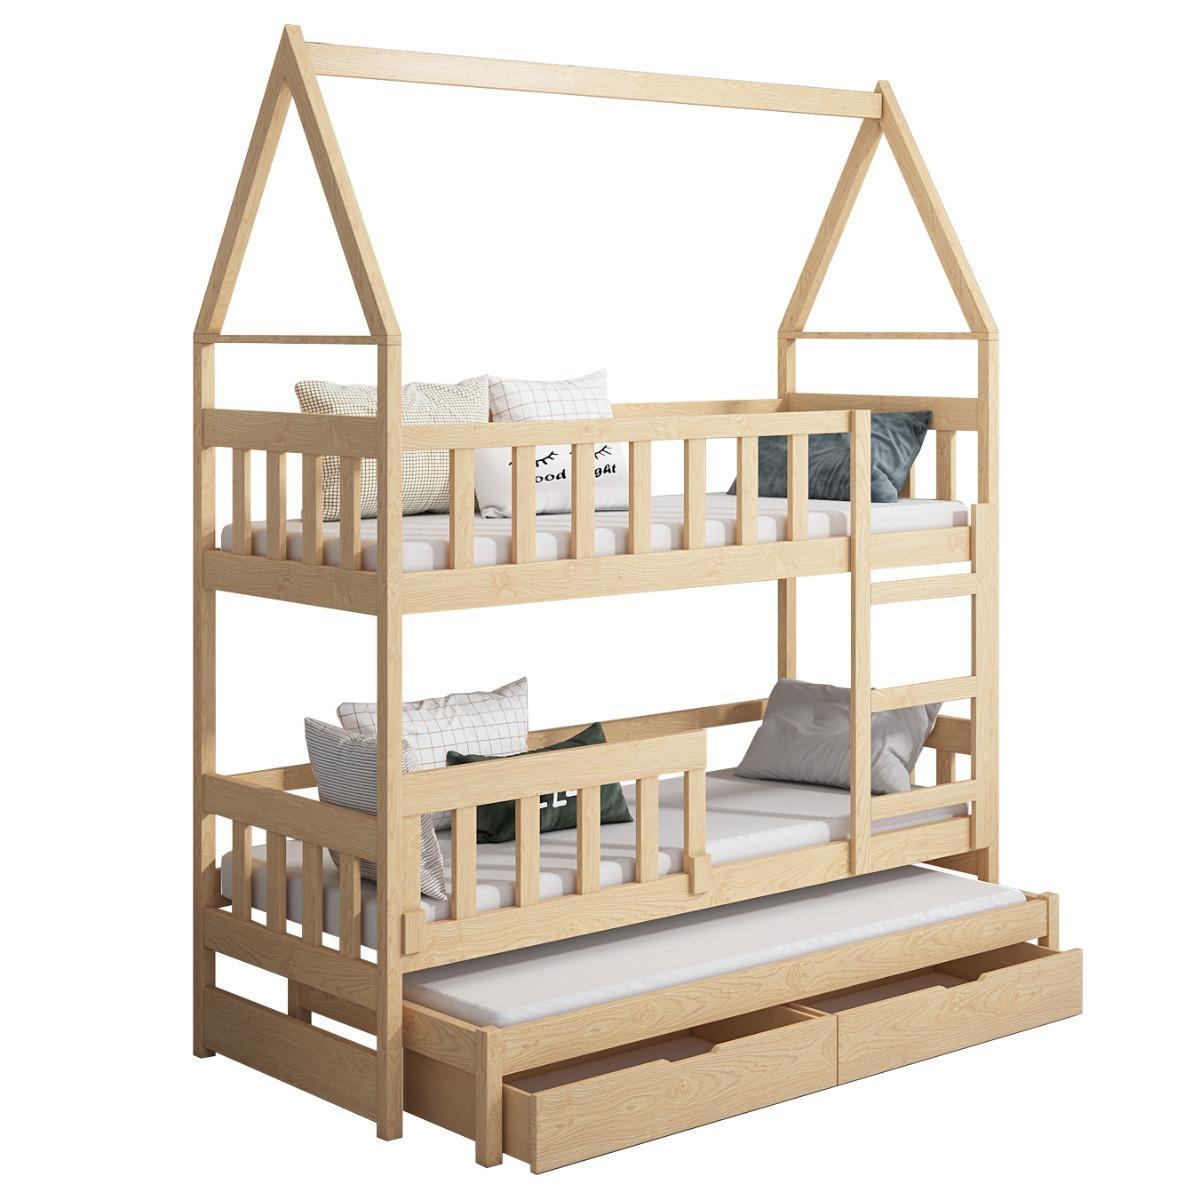 Łóżko piętrowe DOMEK drewno naturalne miejsce do spania dla 3 osób + materace piankowe 180x75 cm w zestawie do pokoju dziecka nr. 6